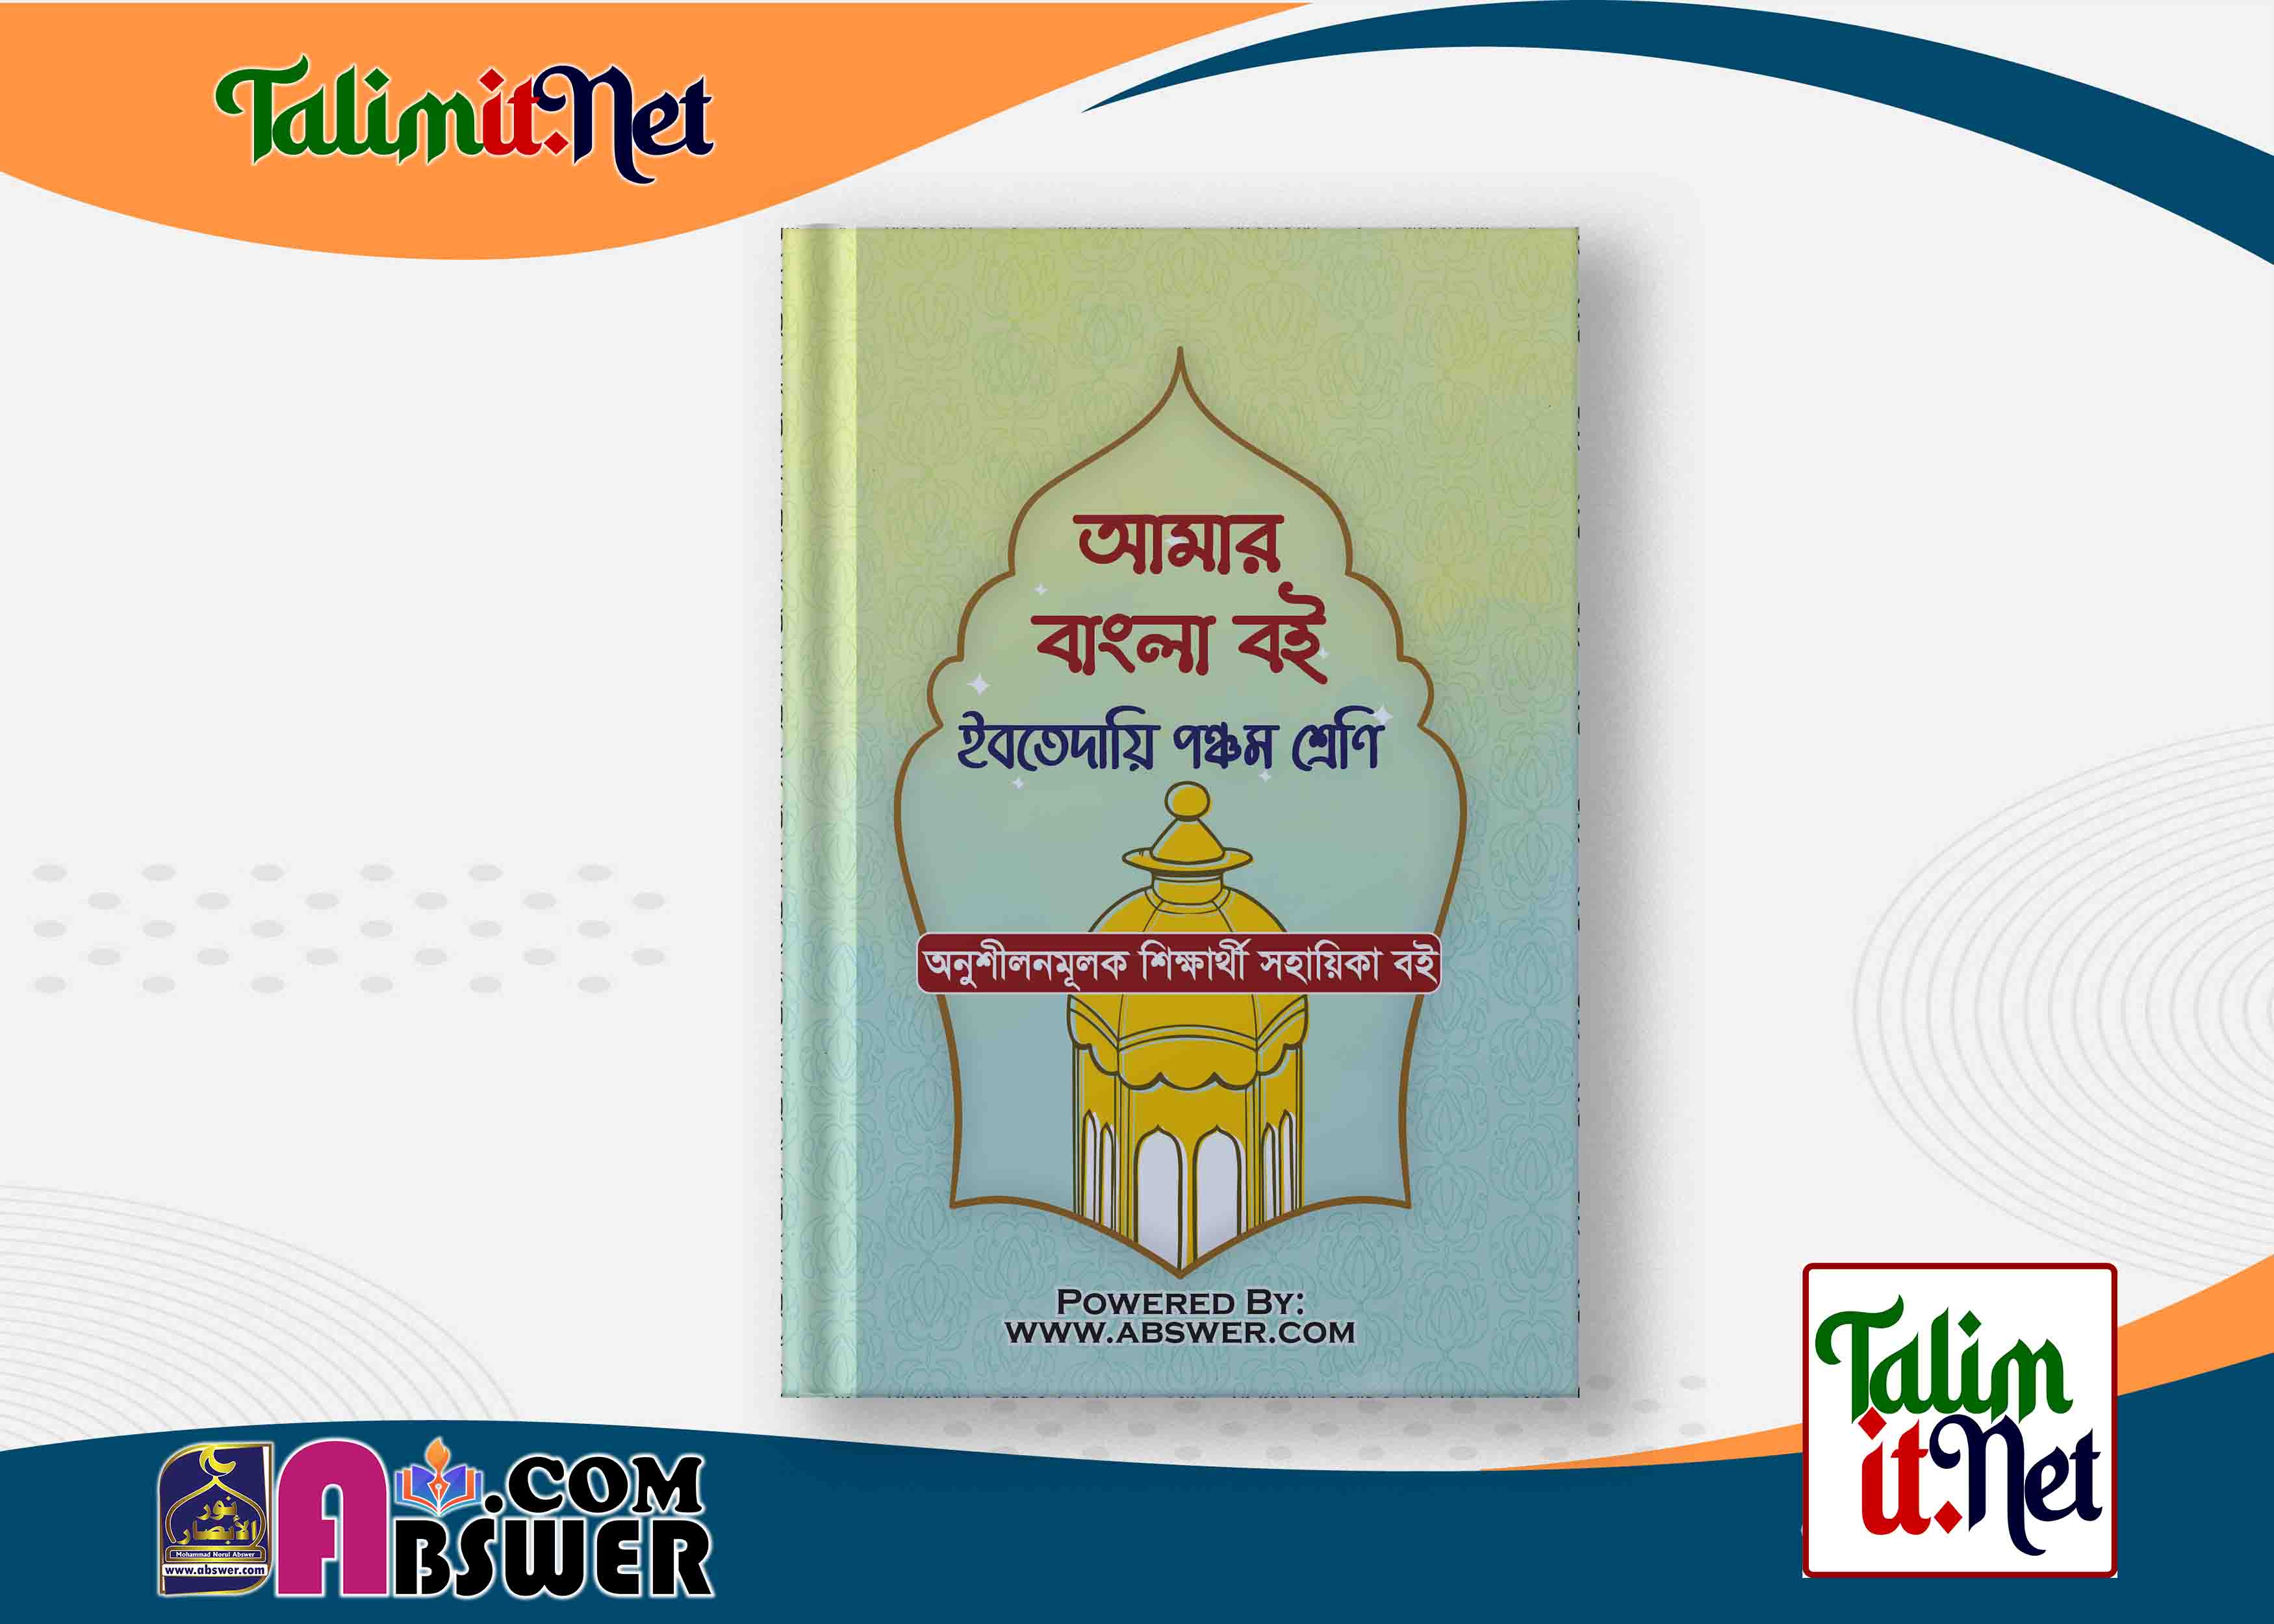 আমার বাংলা বই গাইড পিডিএফ - ইবতেদায়ি ৫ম শ্রেণি | Amar Bangla Book Guide Pdf - Ibtedaie Class 5